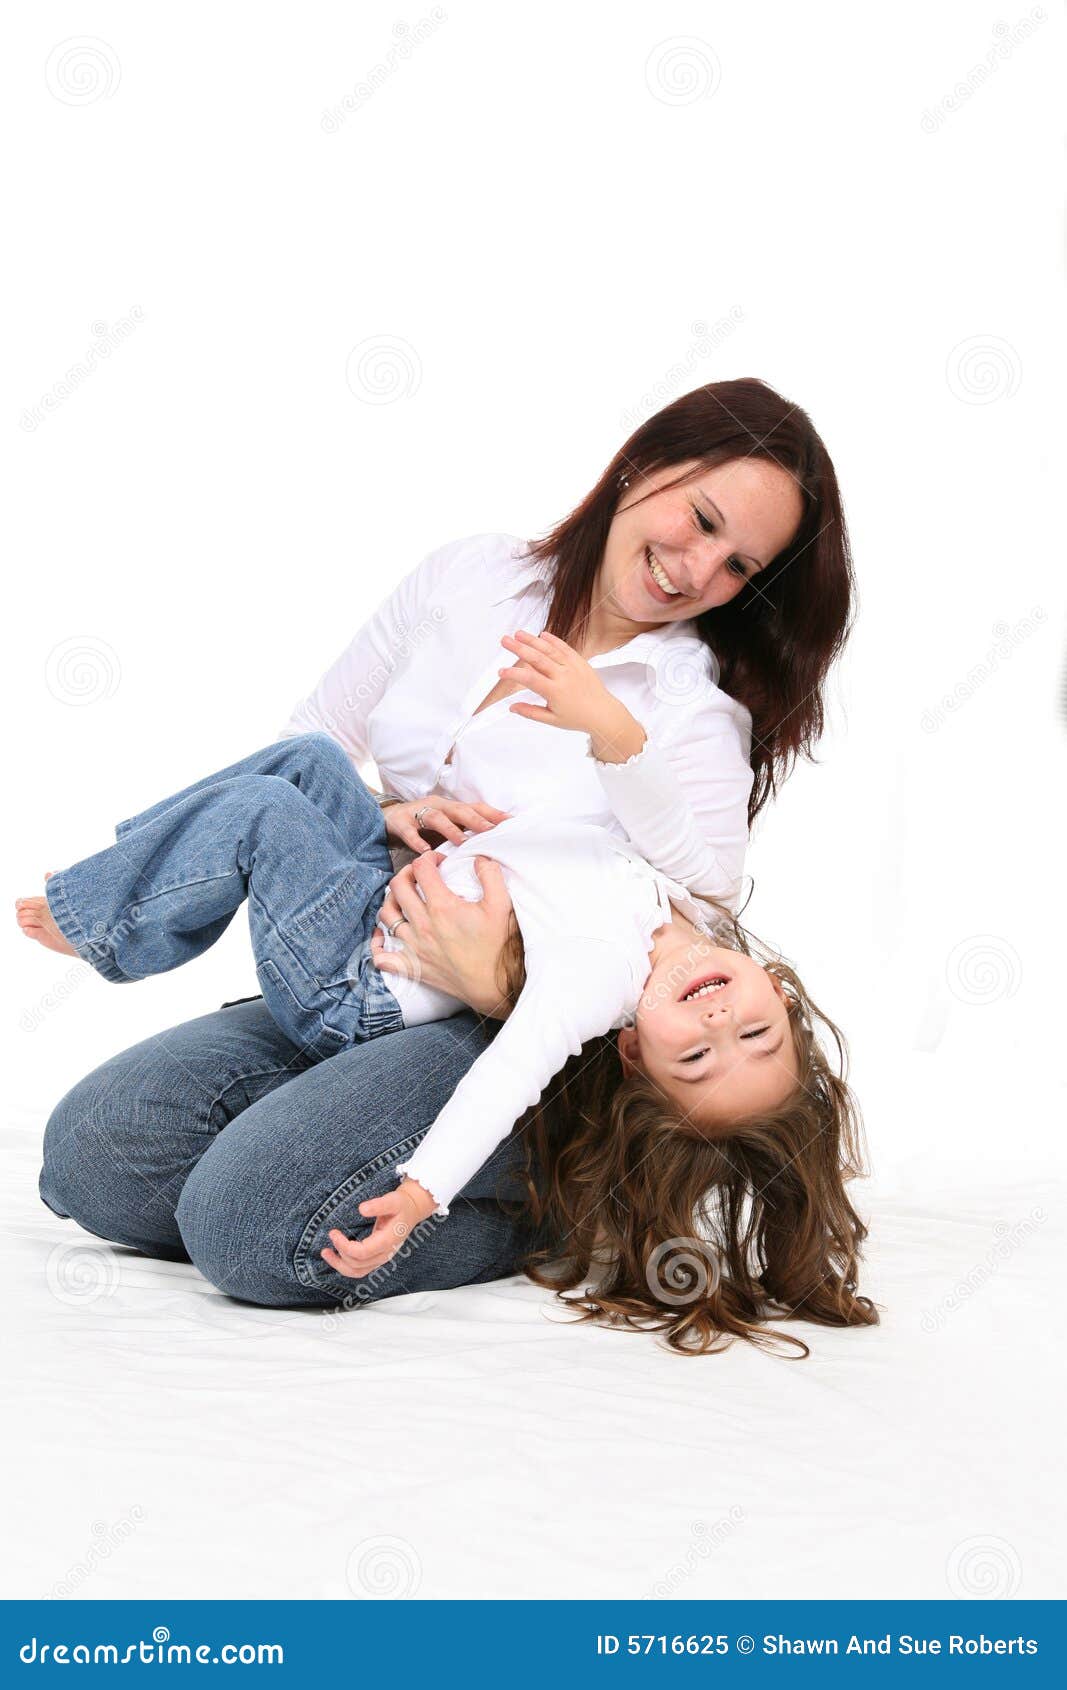 Щекотно в животе. Щекотать ребенка. Девочку щекочут. Щекотка девочек. Мама щекочет детей.